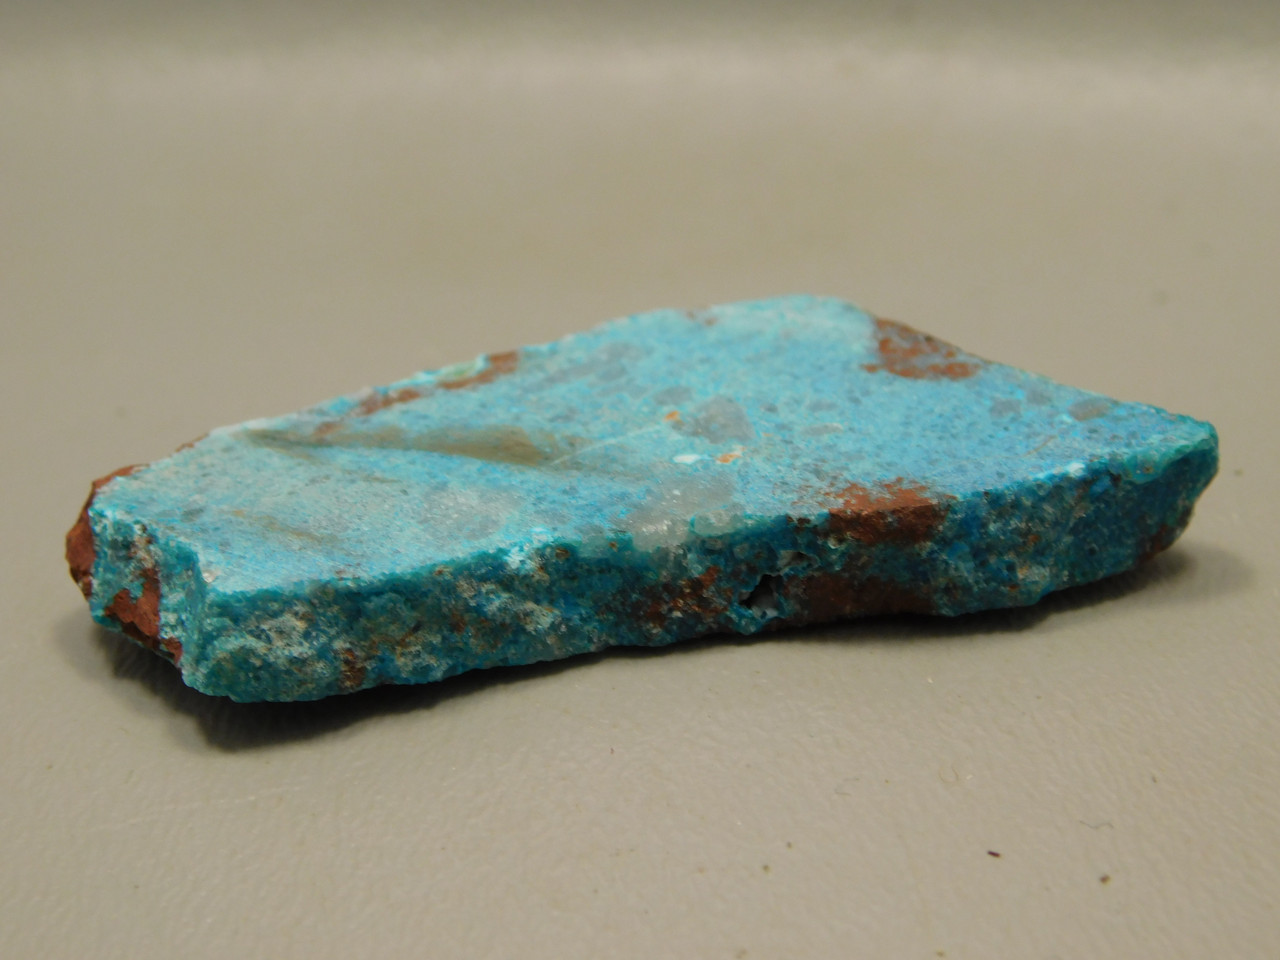 Gem Silica Chrysocolla Cuprite Unpolished Stone Slab Rough Rock #O106